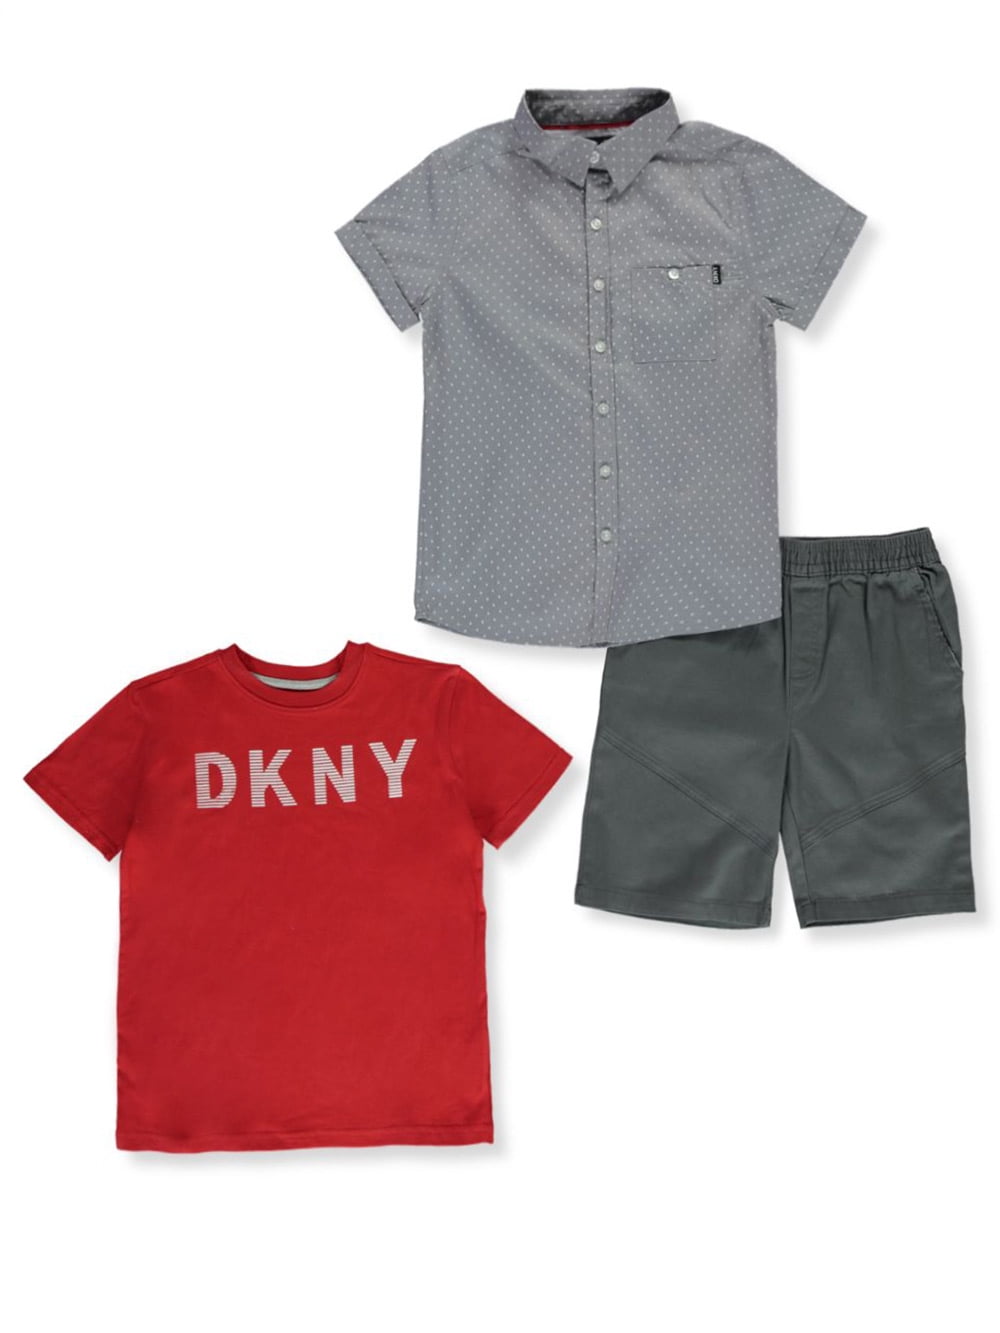 DKNY Boys Shorts Set 